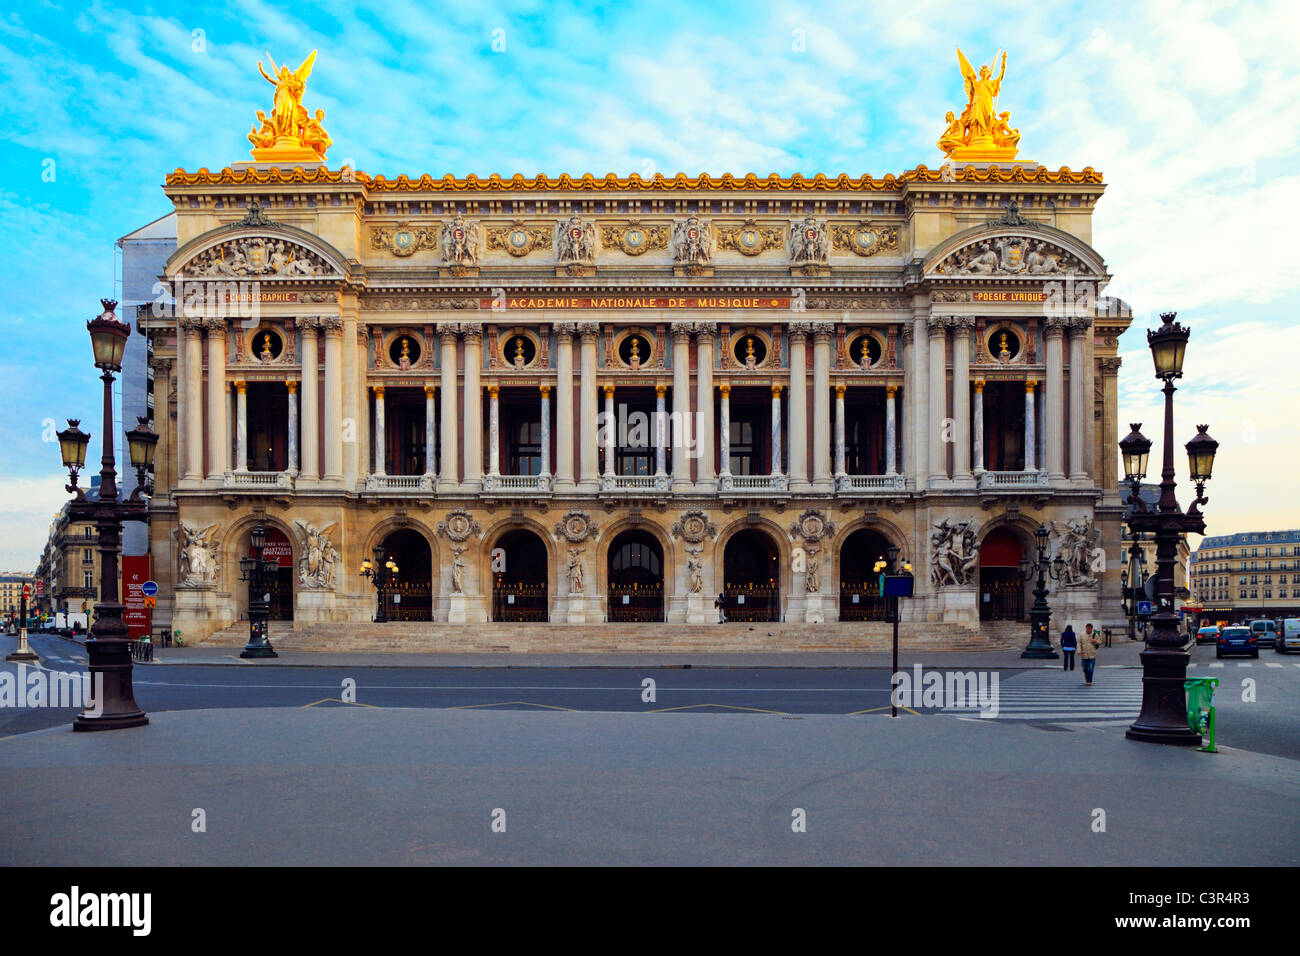 Facade of The Opera or Palace Garnier. Paris, France. Stock Photo